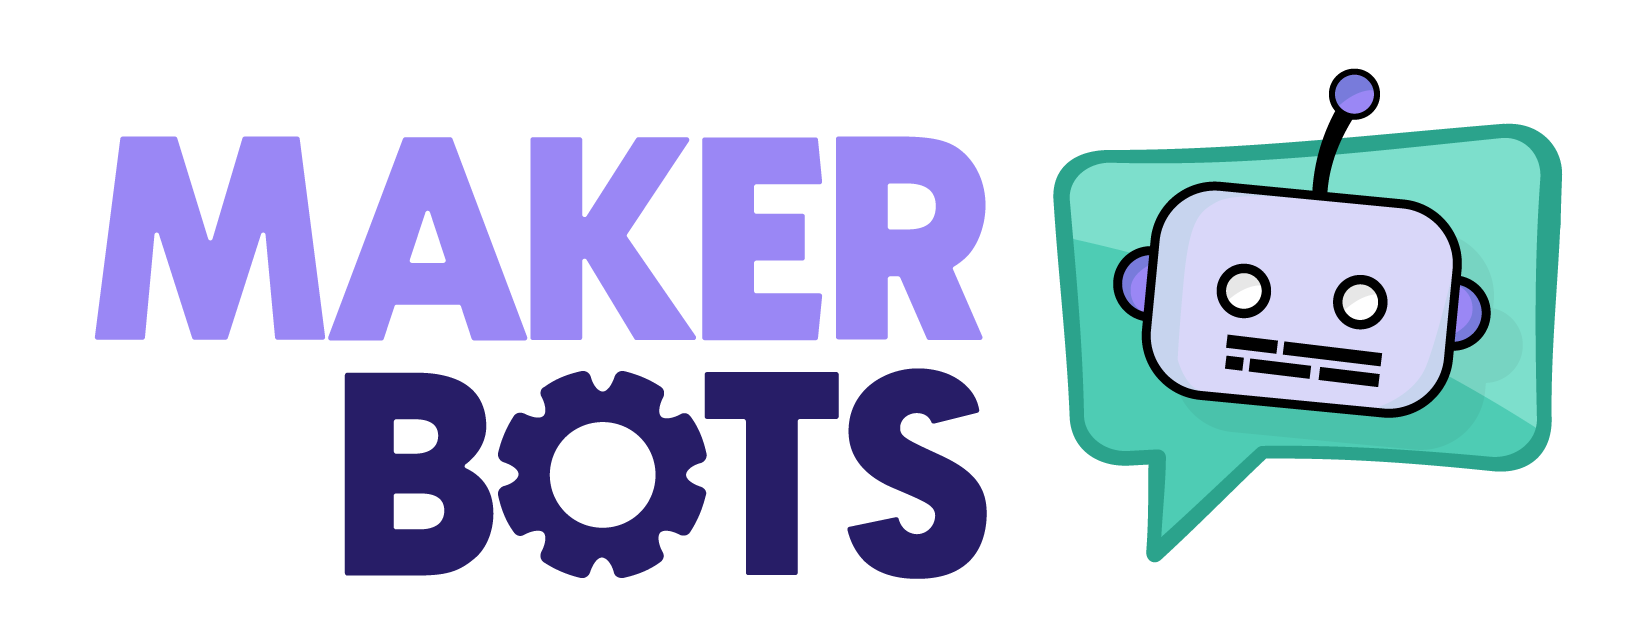 logotipo_MakerBots